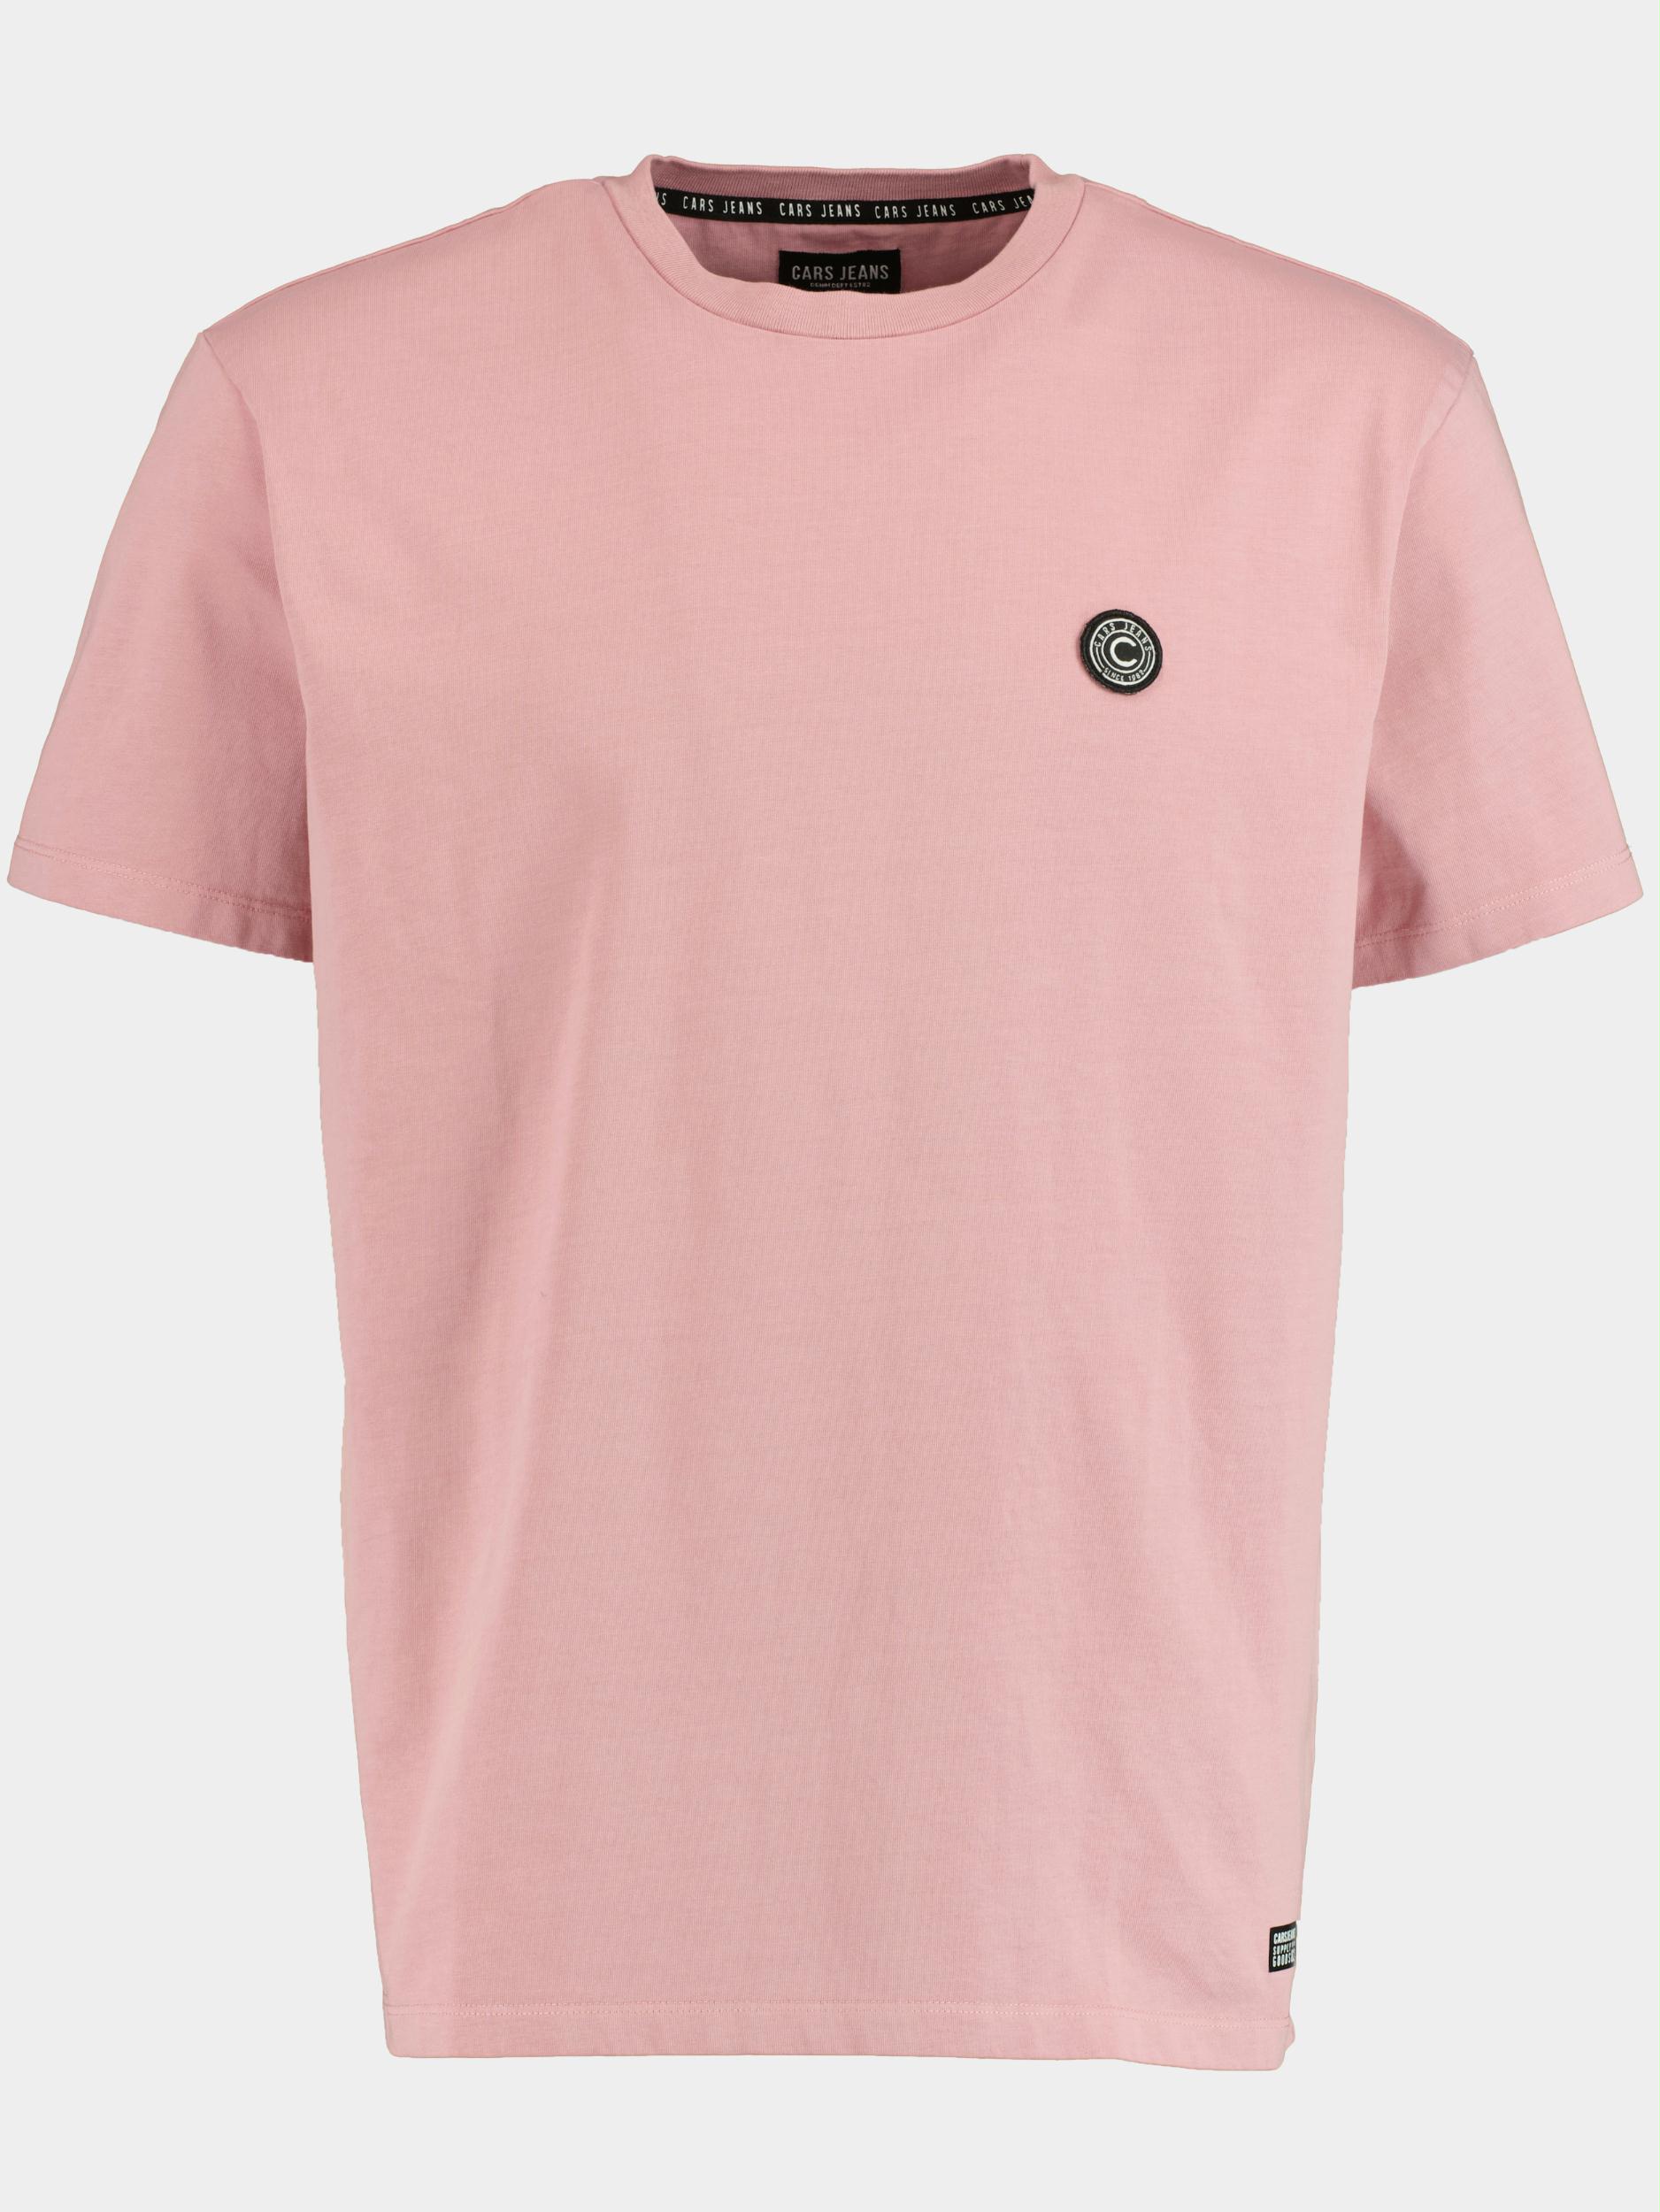 Cars Jeans T-shirt korte mouw Roze Marcetti 66782/62